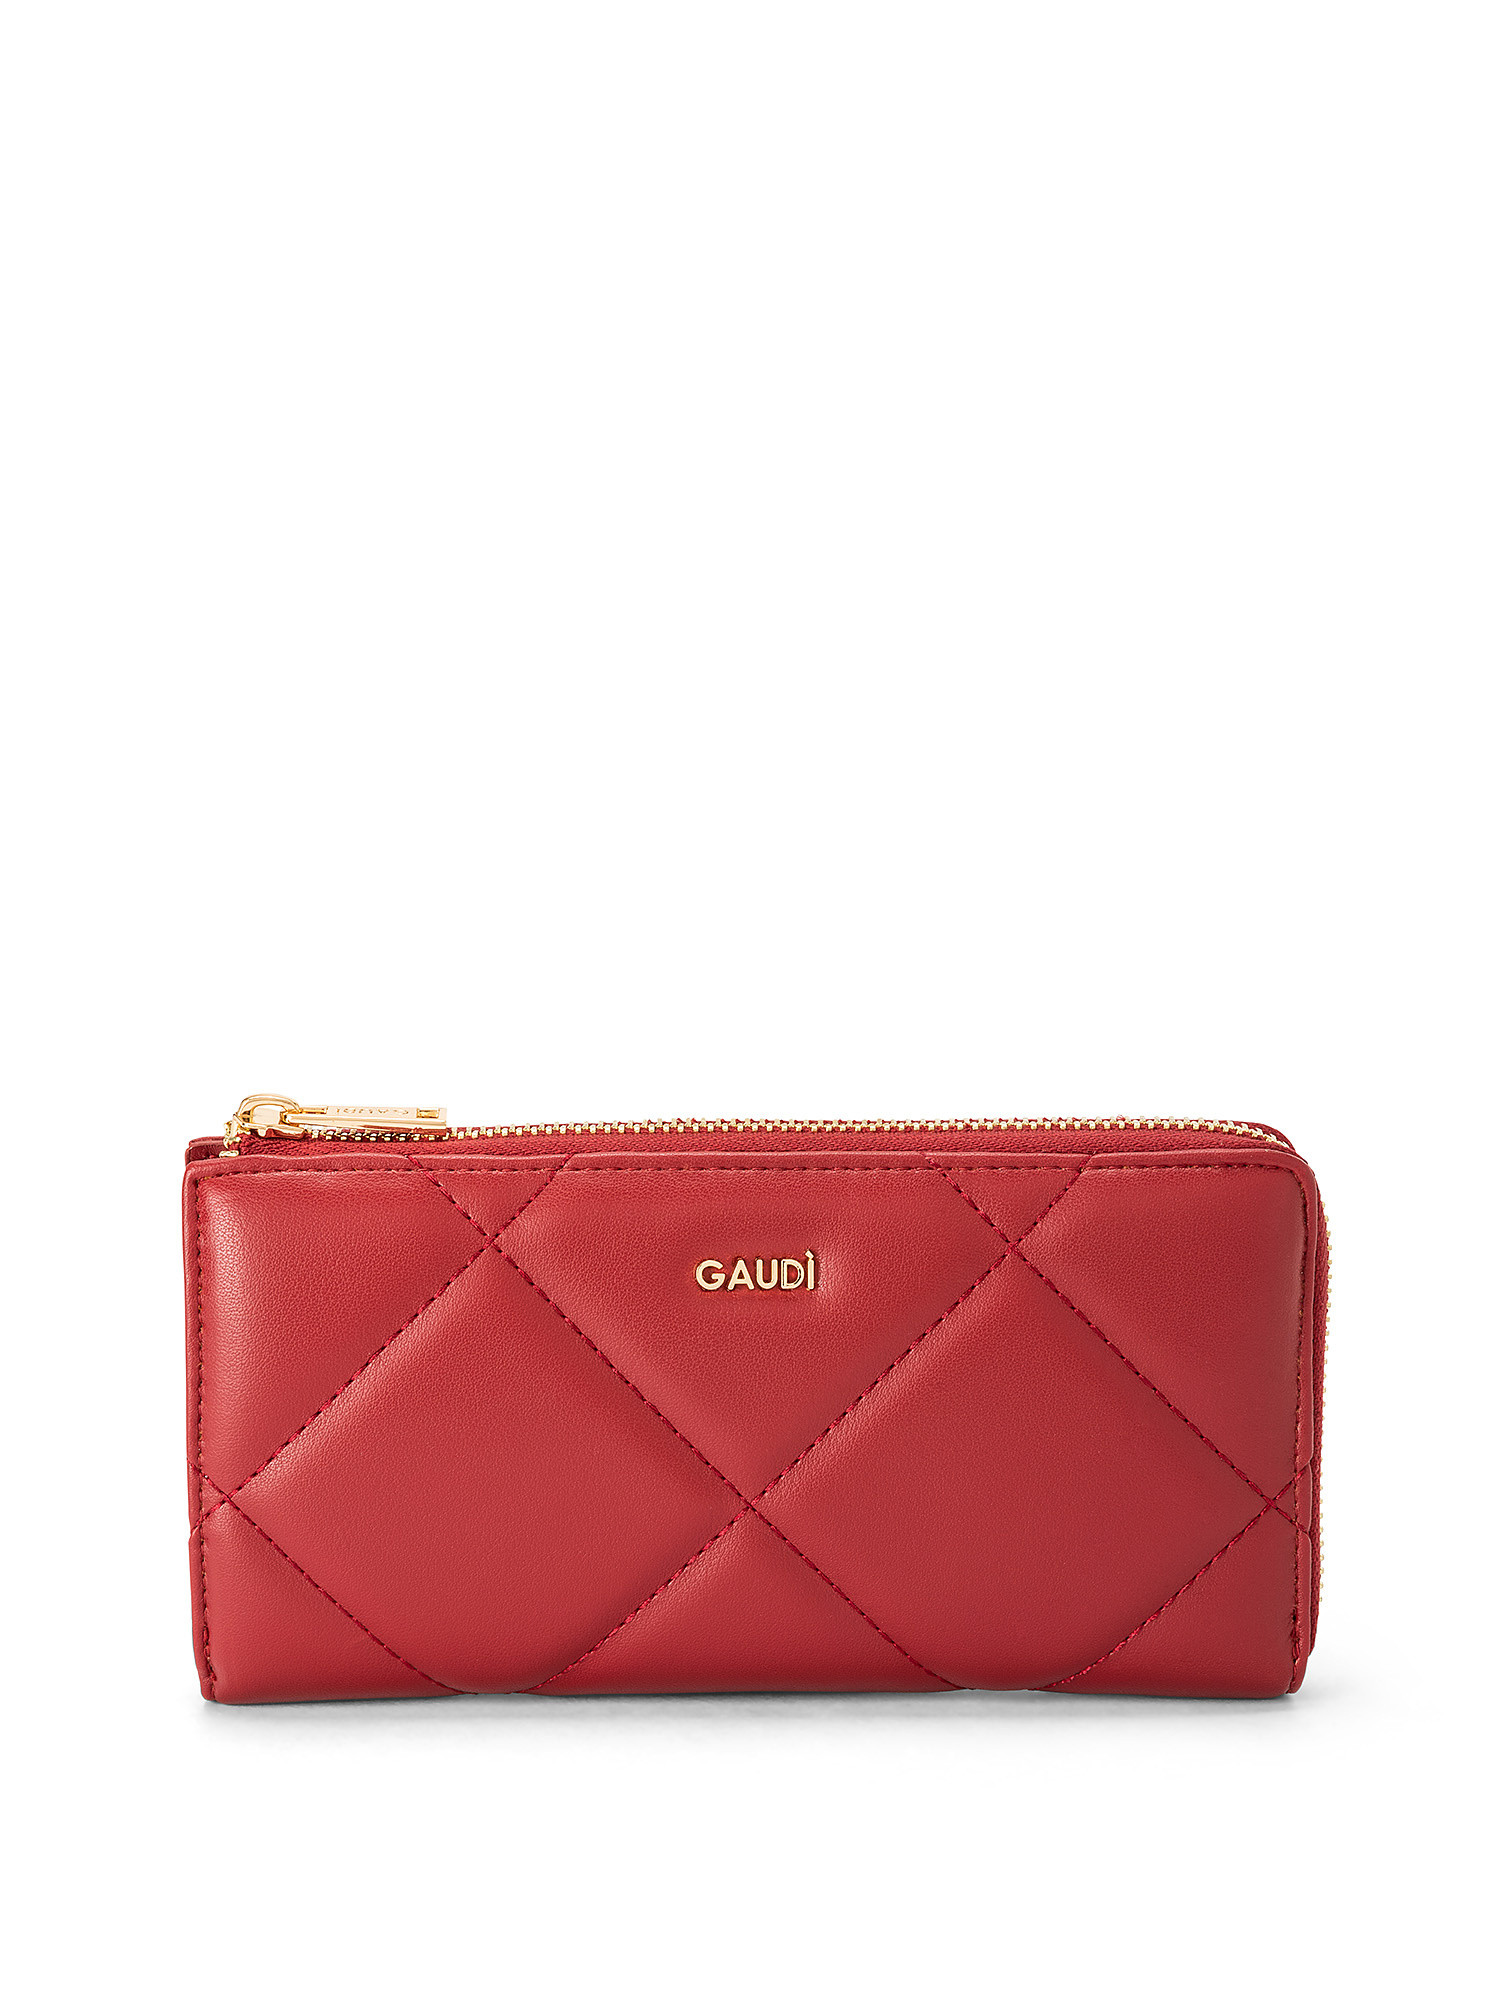 Gaudì - Luna wallet, Dark Red, large image number 0